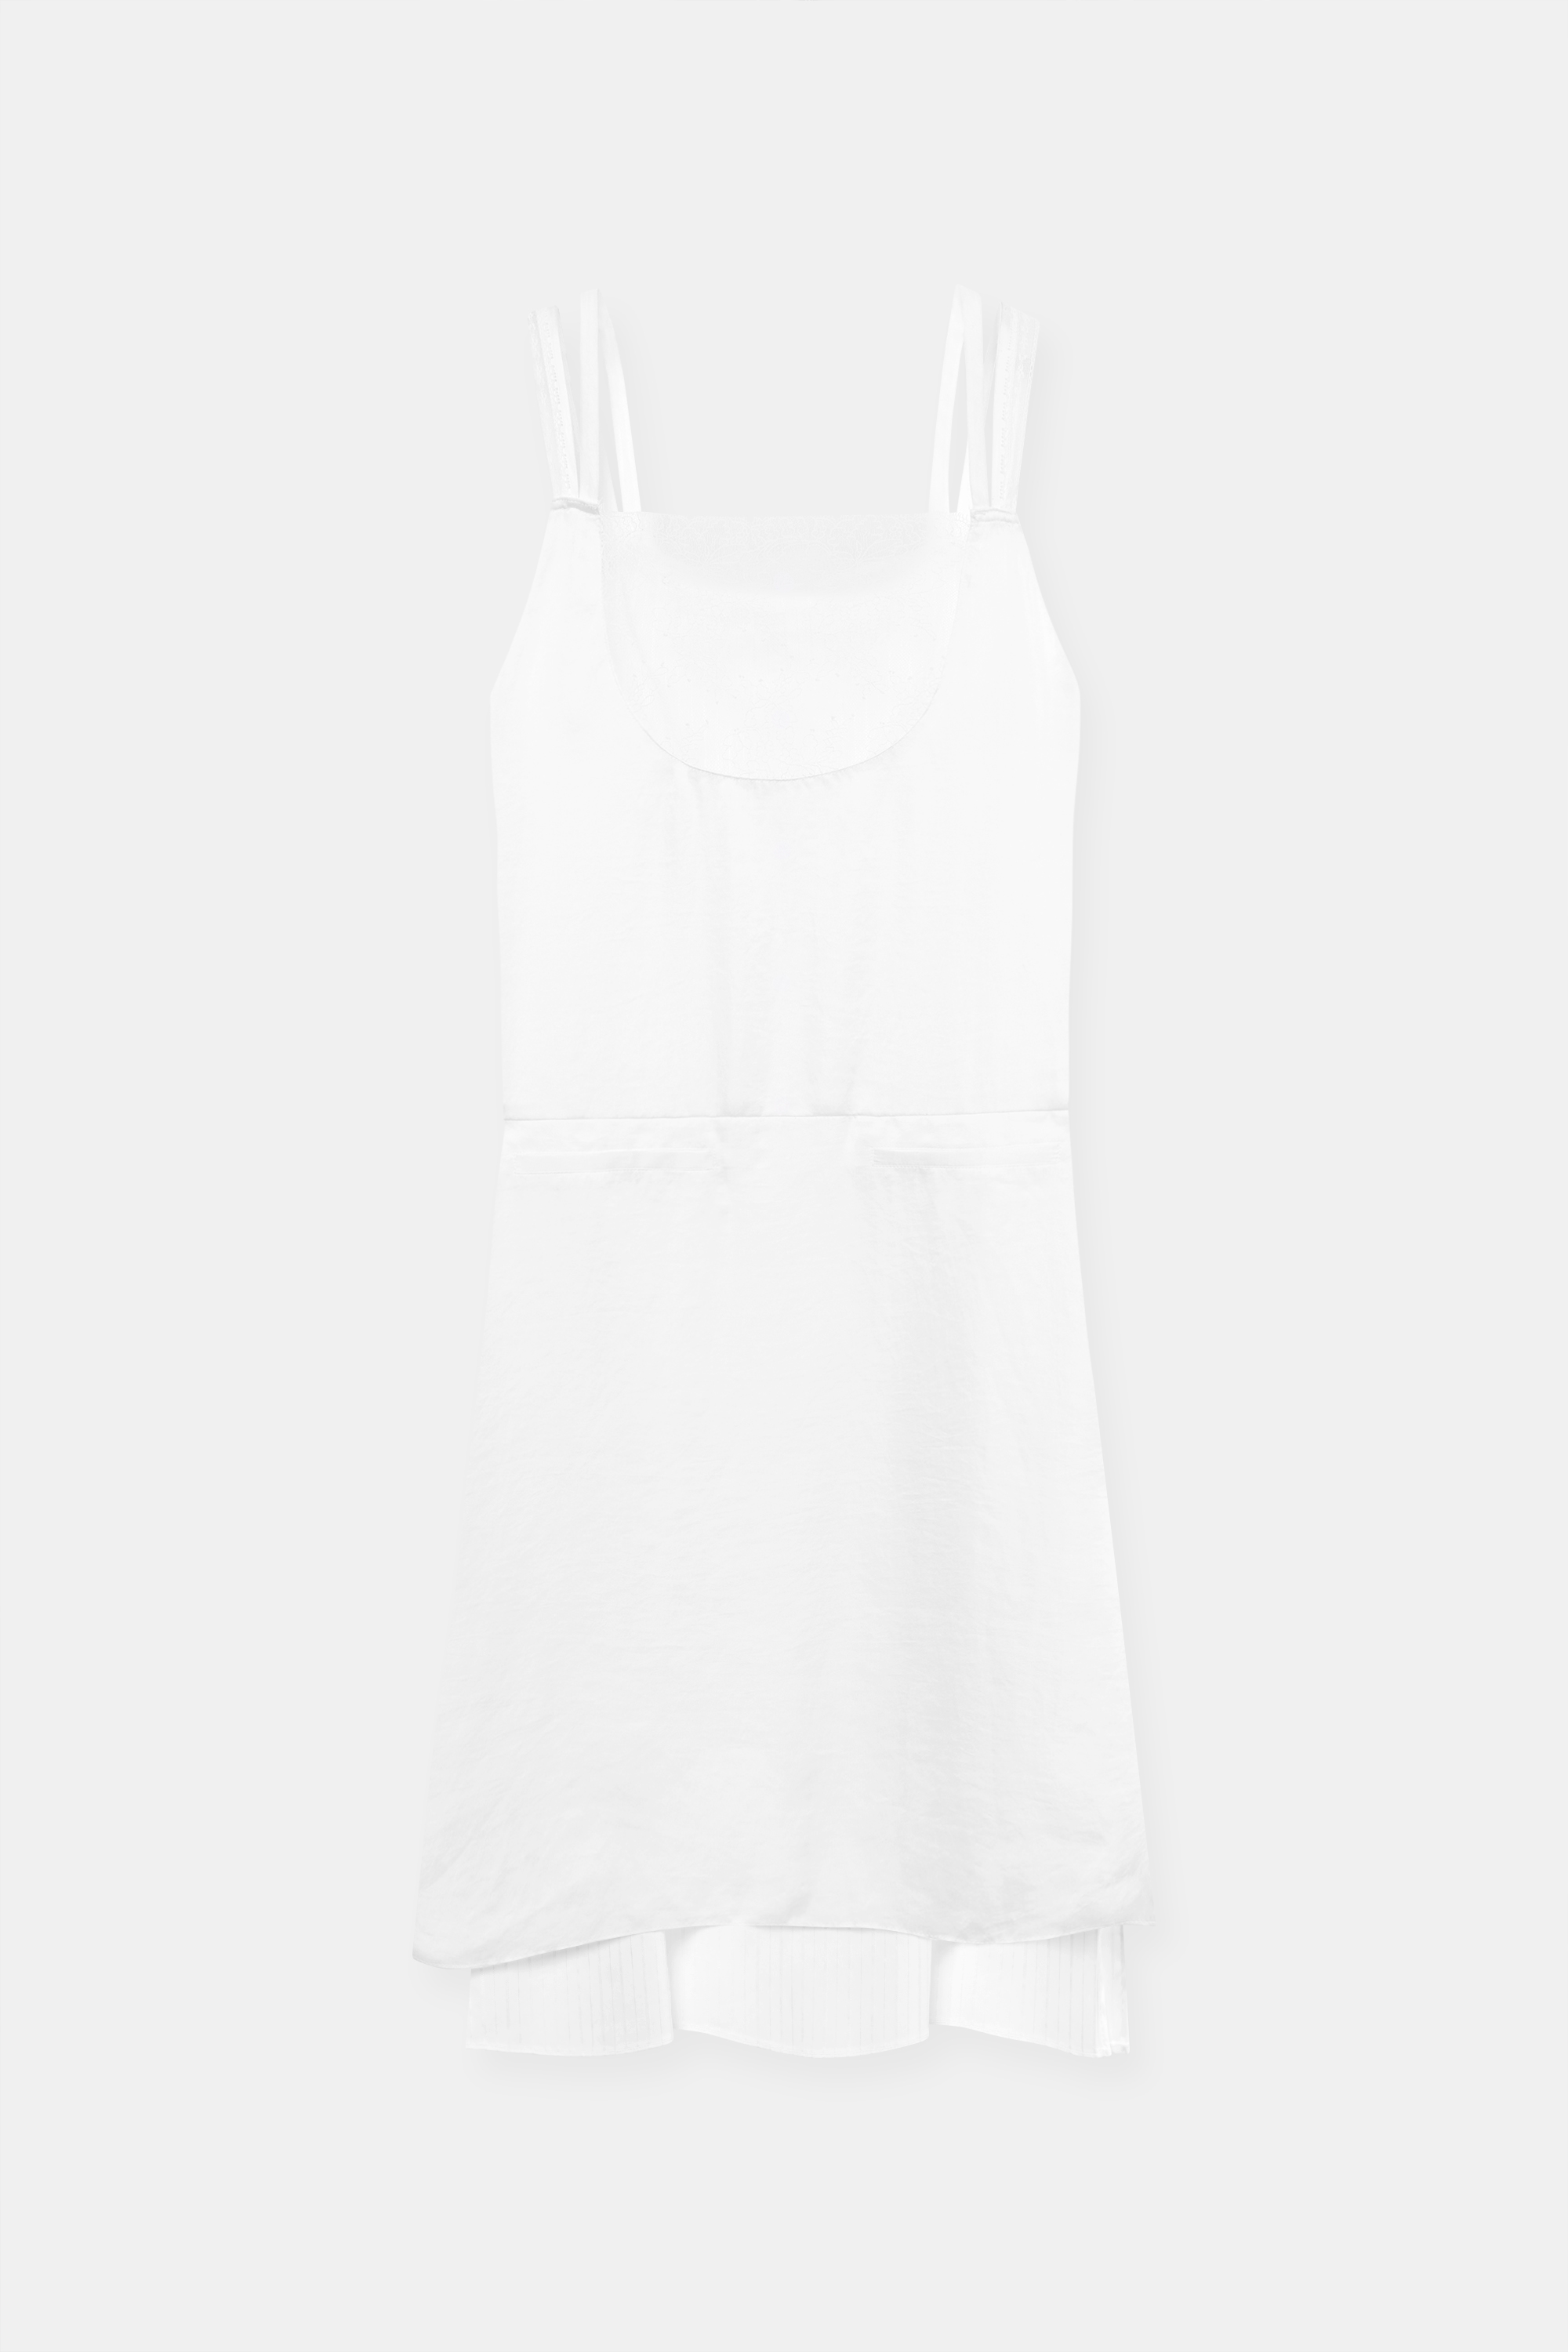 ANN LAYERED DRESS white